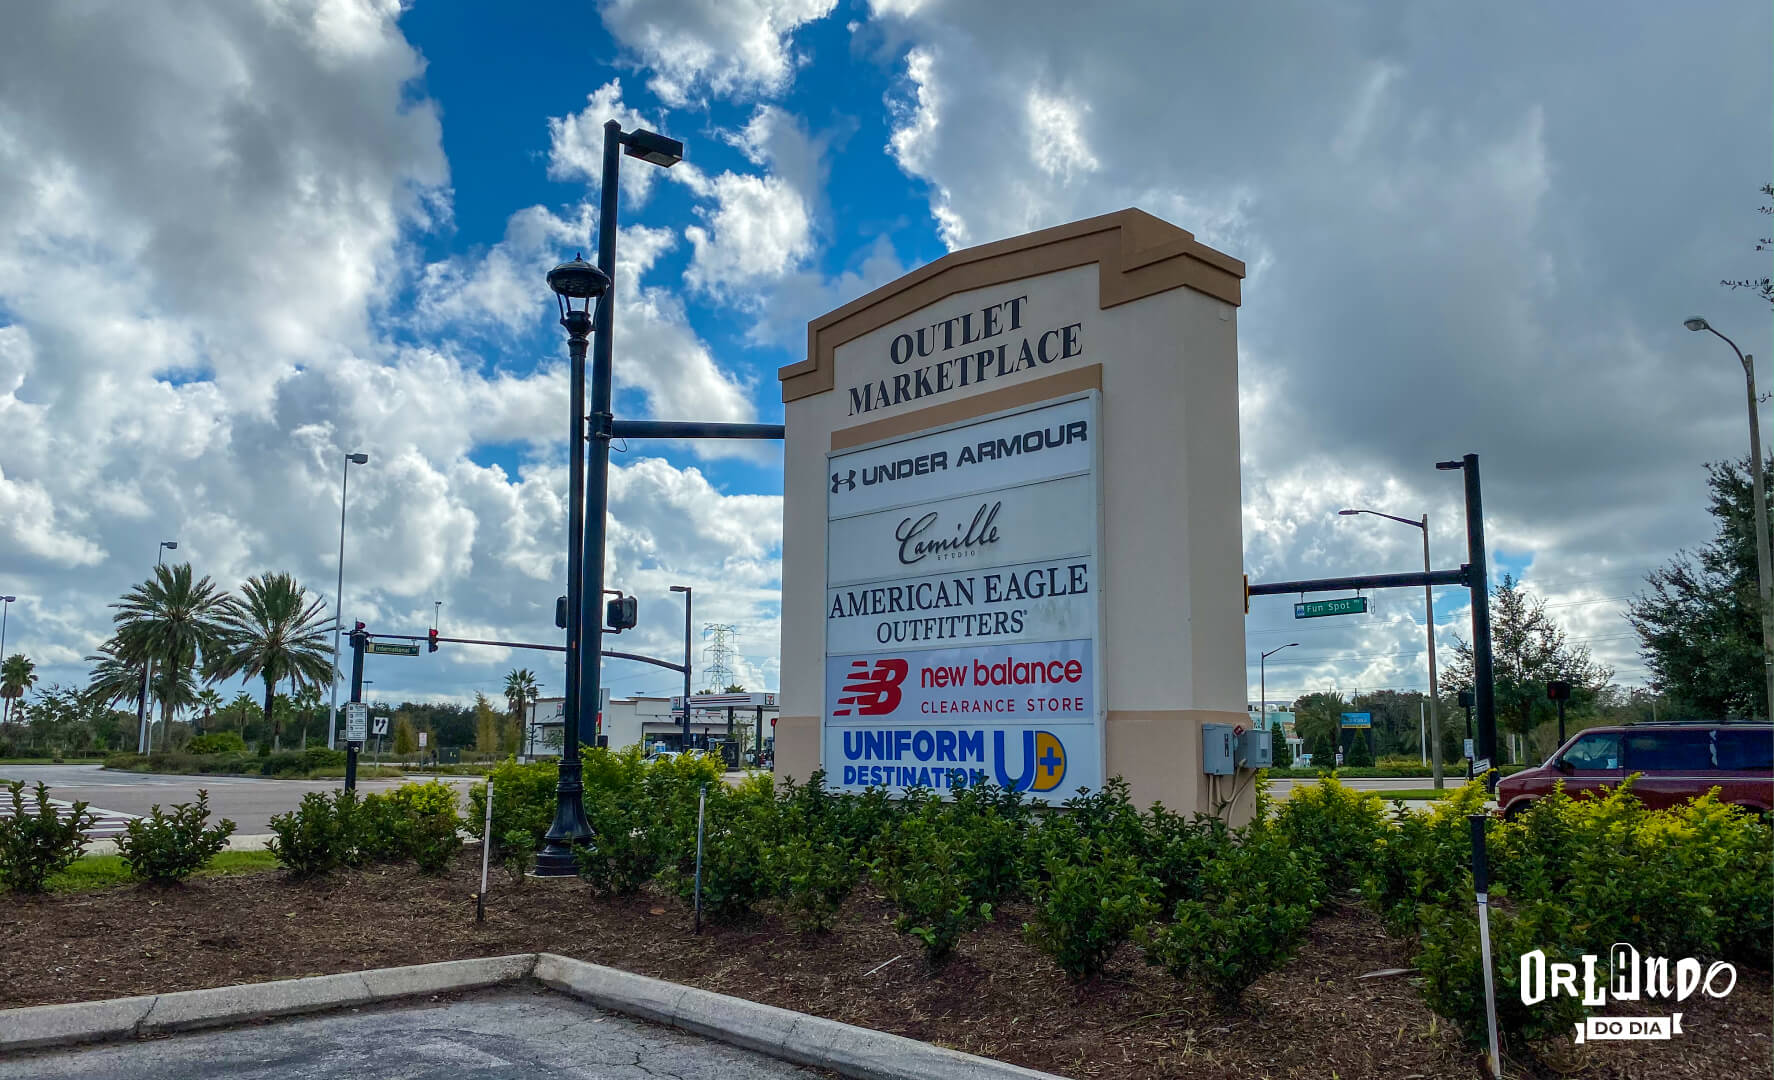 Lojas Clearance em Orlando: Economia e Estilo em um Só Lugar - Descobrindo  Orlando